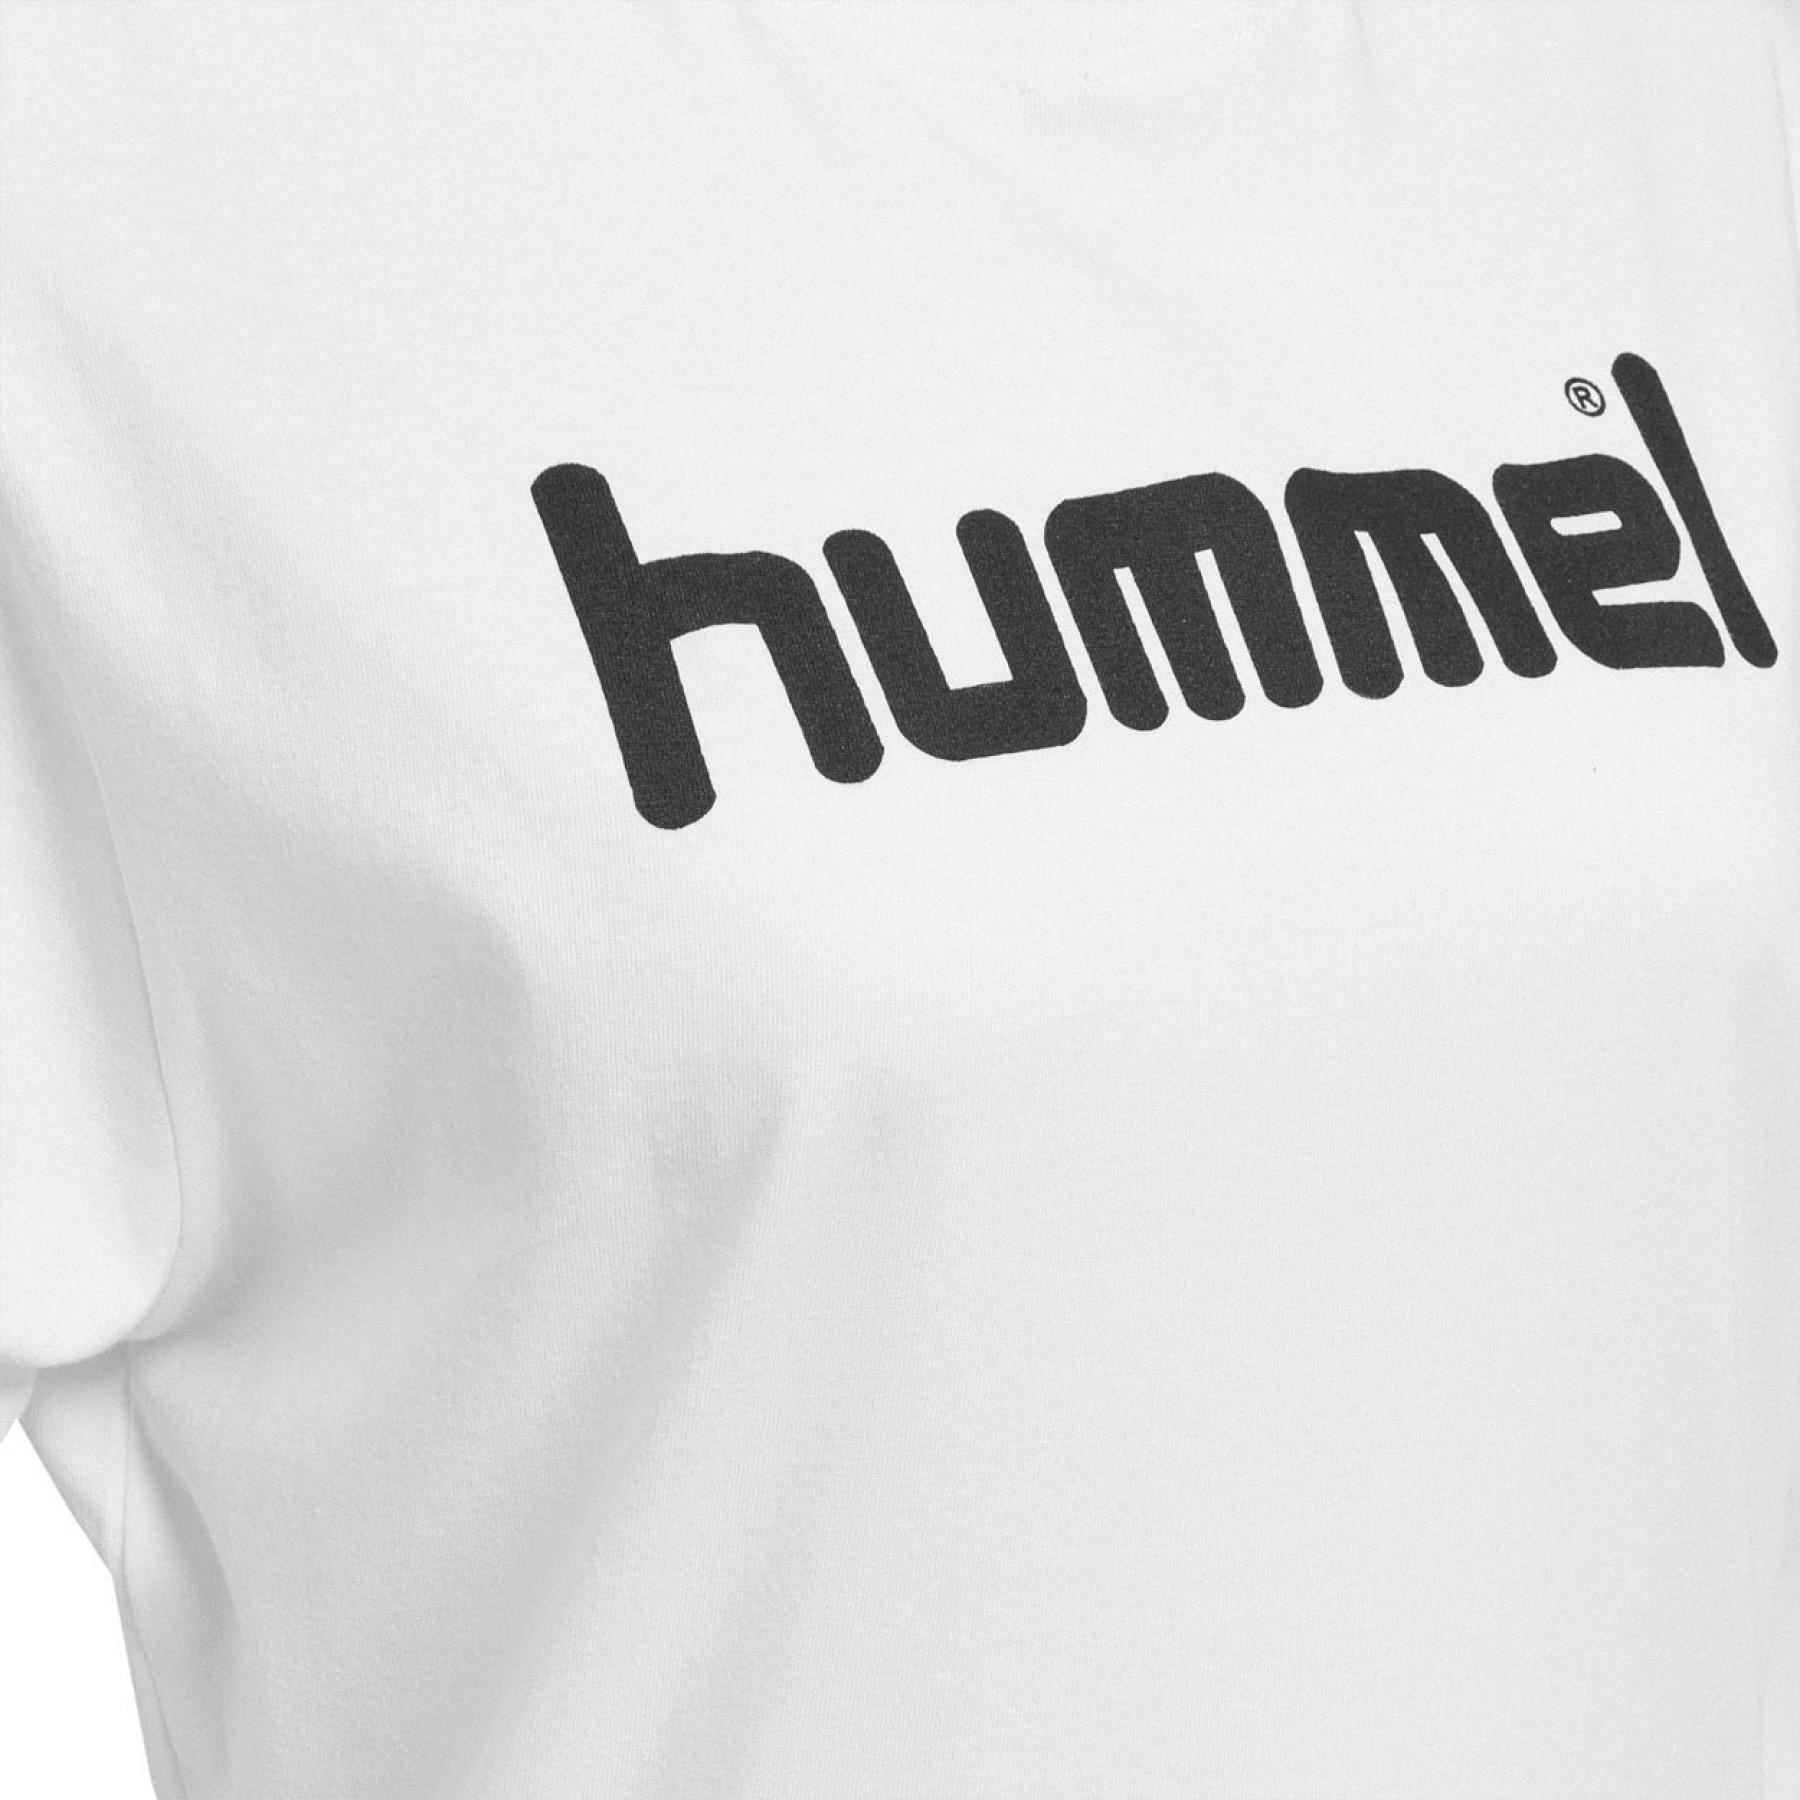 Camiseta mujer Hummel Cotton Logo